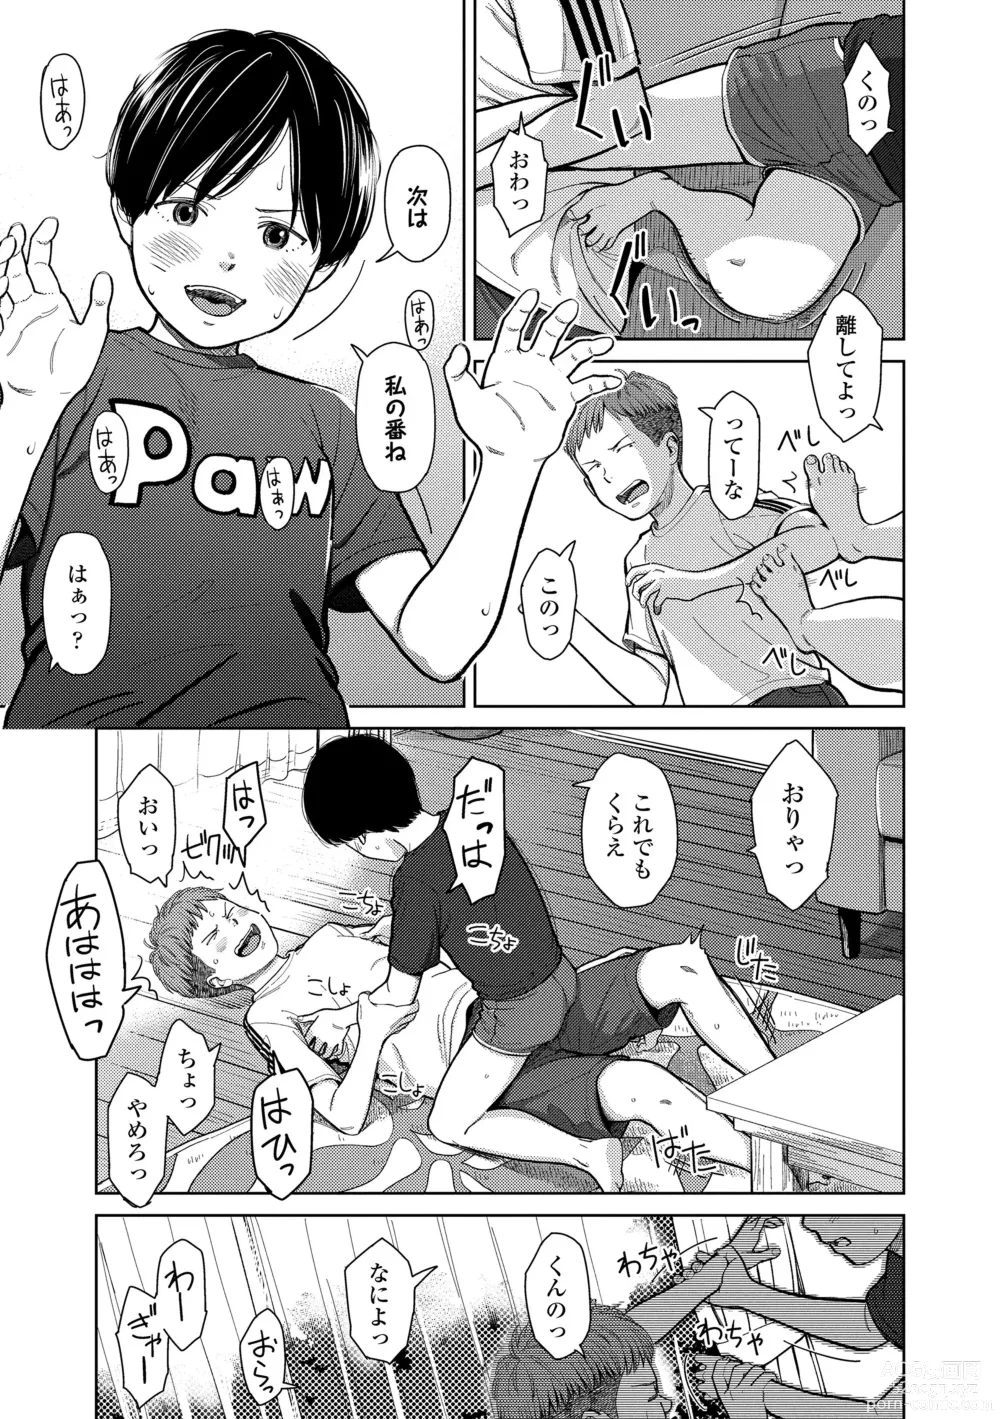 Page 9 of manga Over Kill